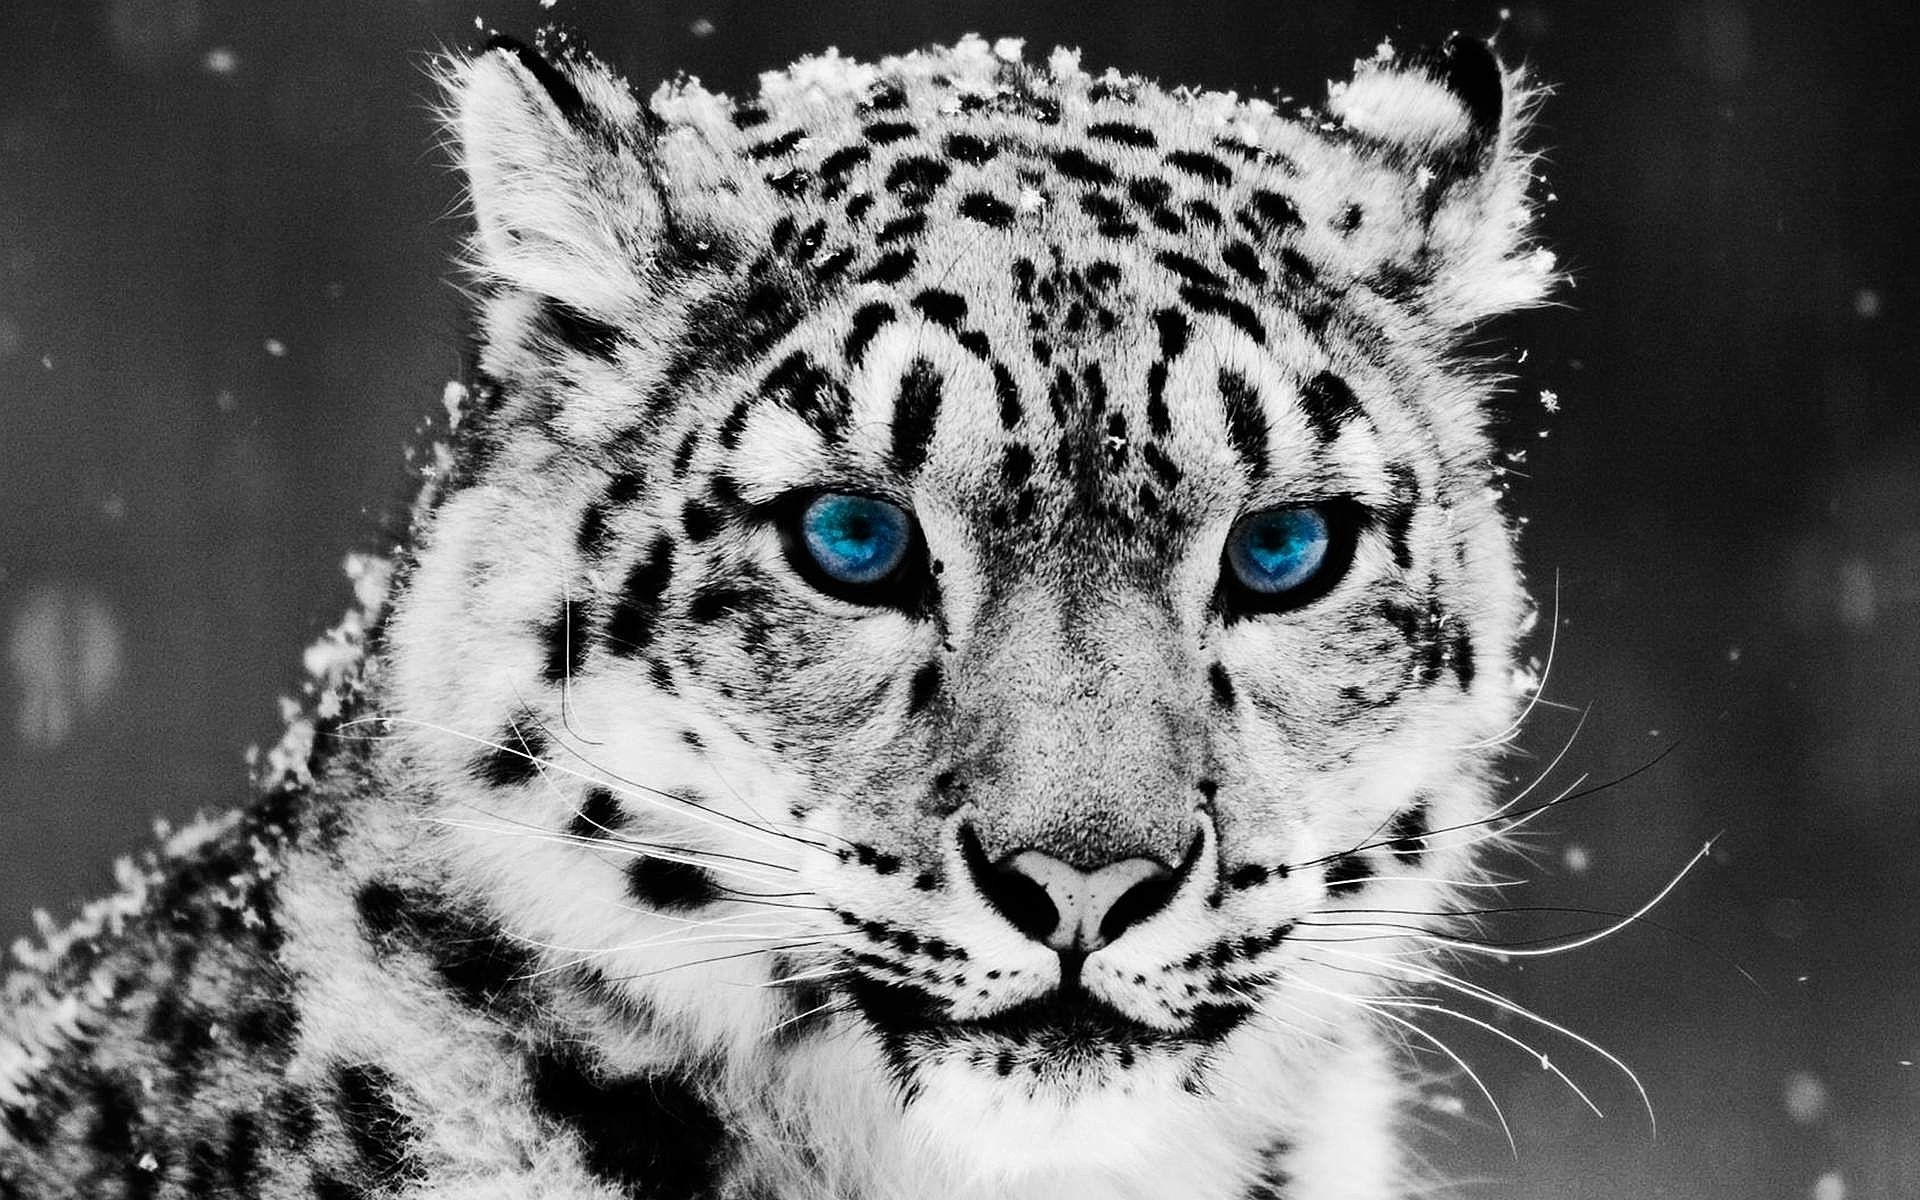 Snow Leopard Wallpaper Blue Eyes